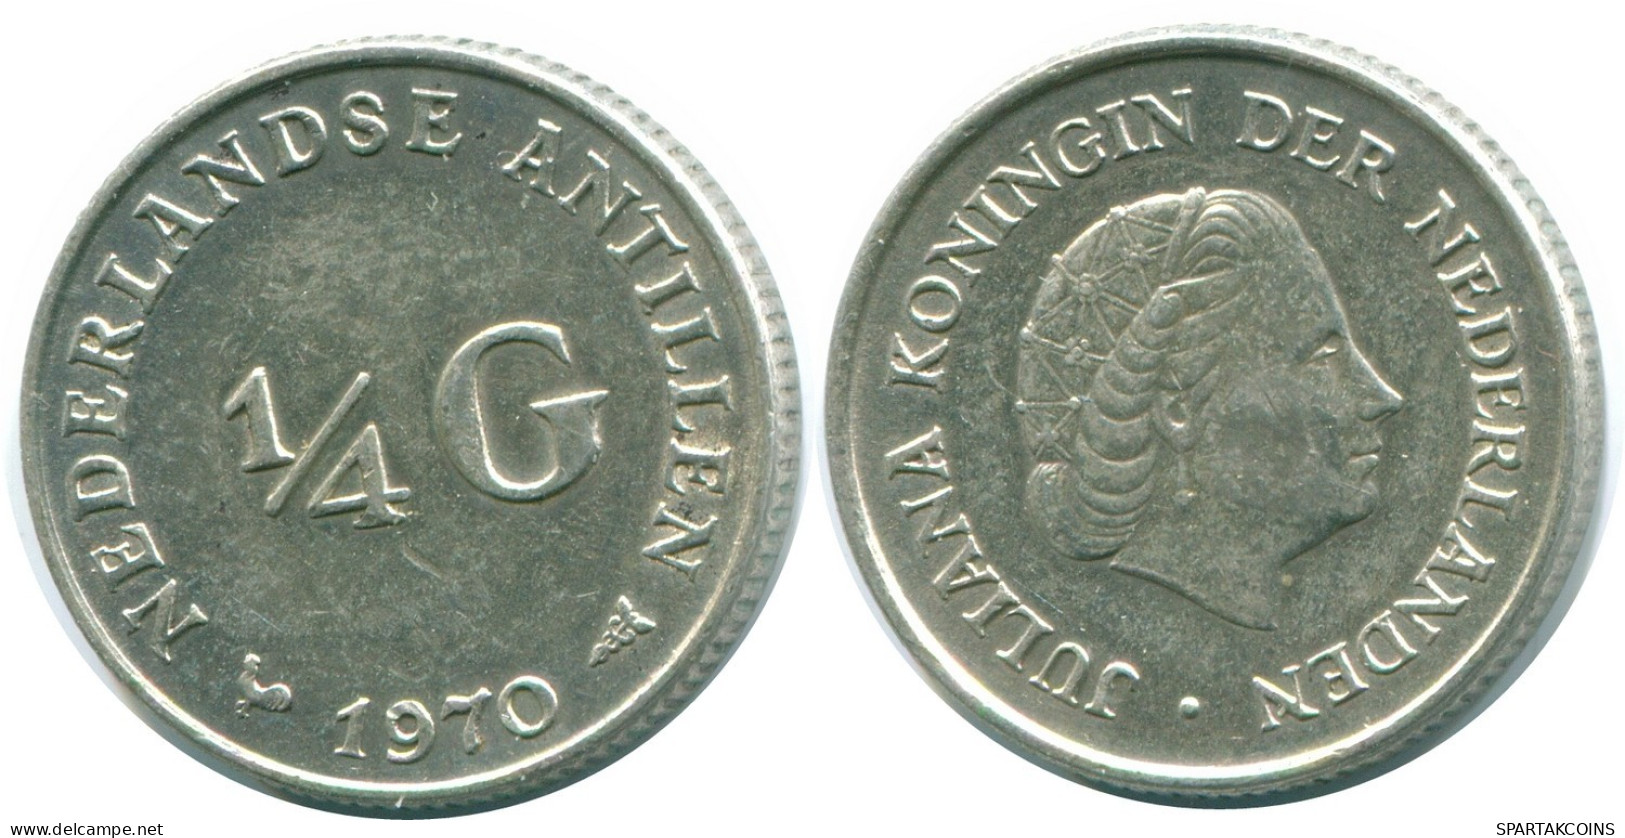 1/4 GULDEN 1970 NIEDERLÄNDISCHE ANTILLEN SILBER Koloniale Münze #NL11632.4.D.A - Antilles Néerlandaises